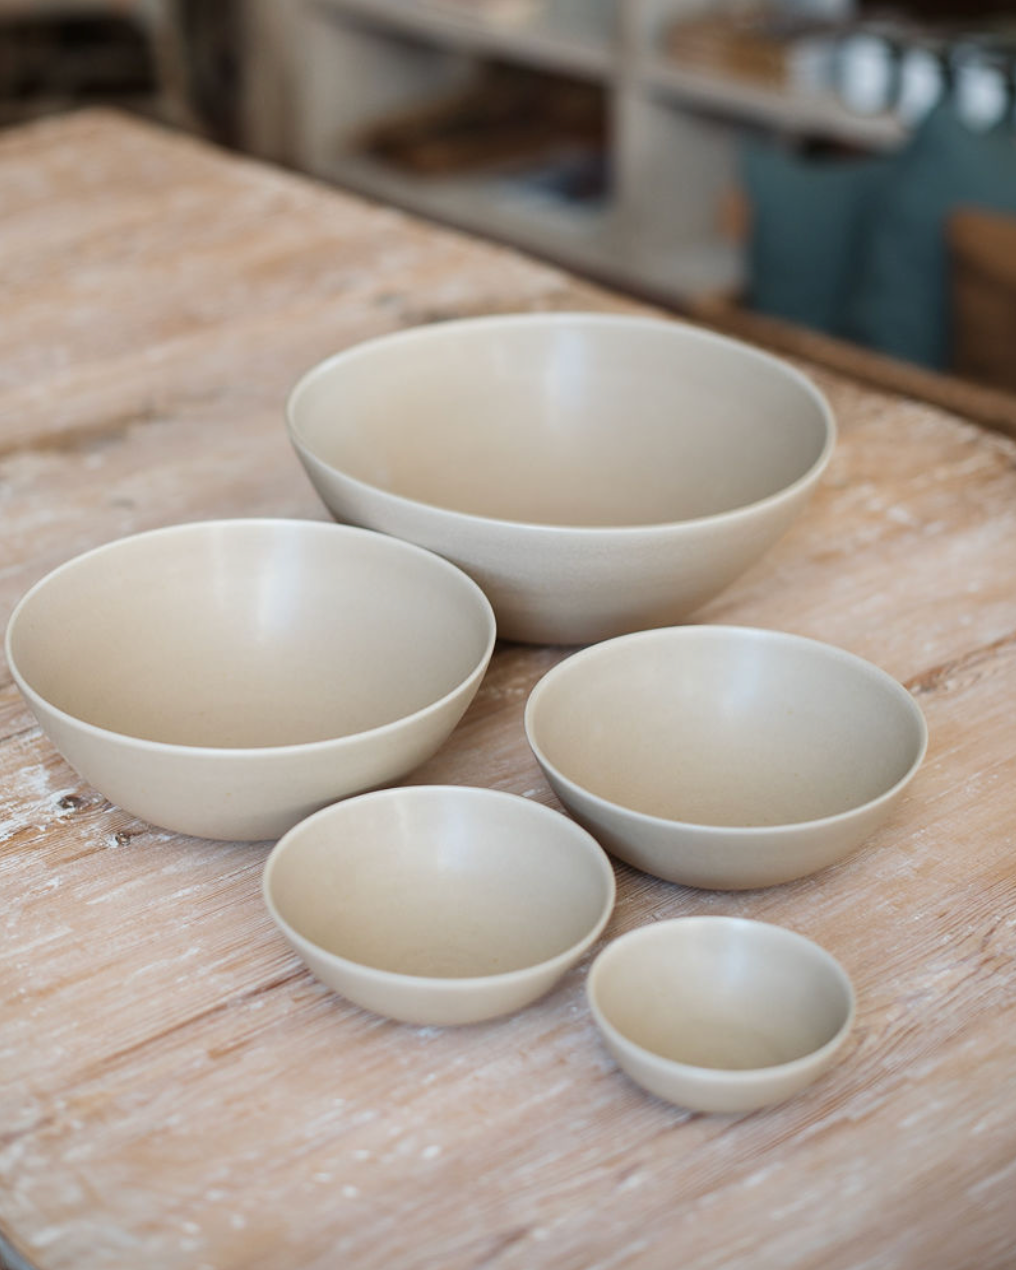 Ceramic Flared Bowl in Sand